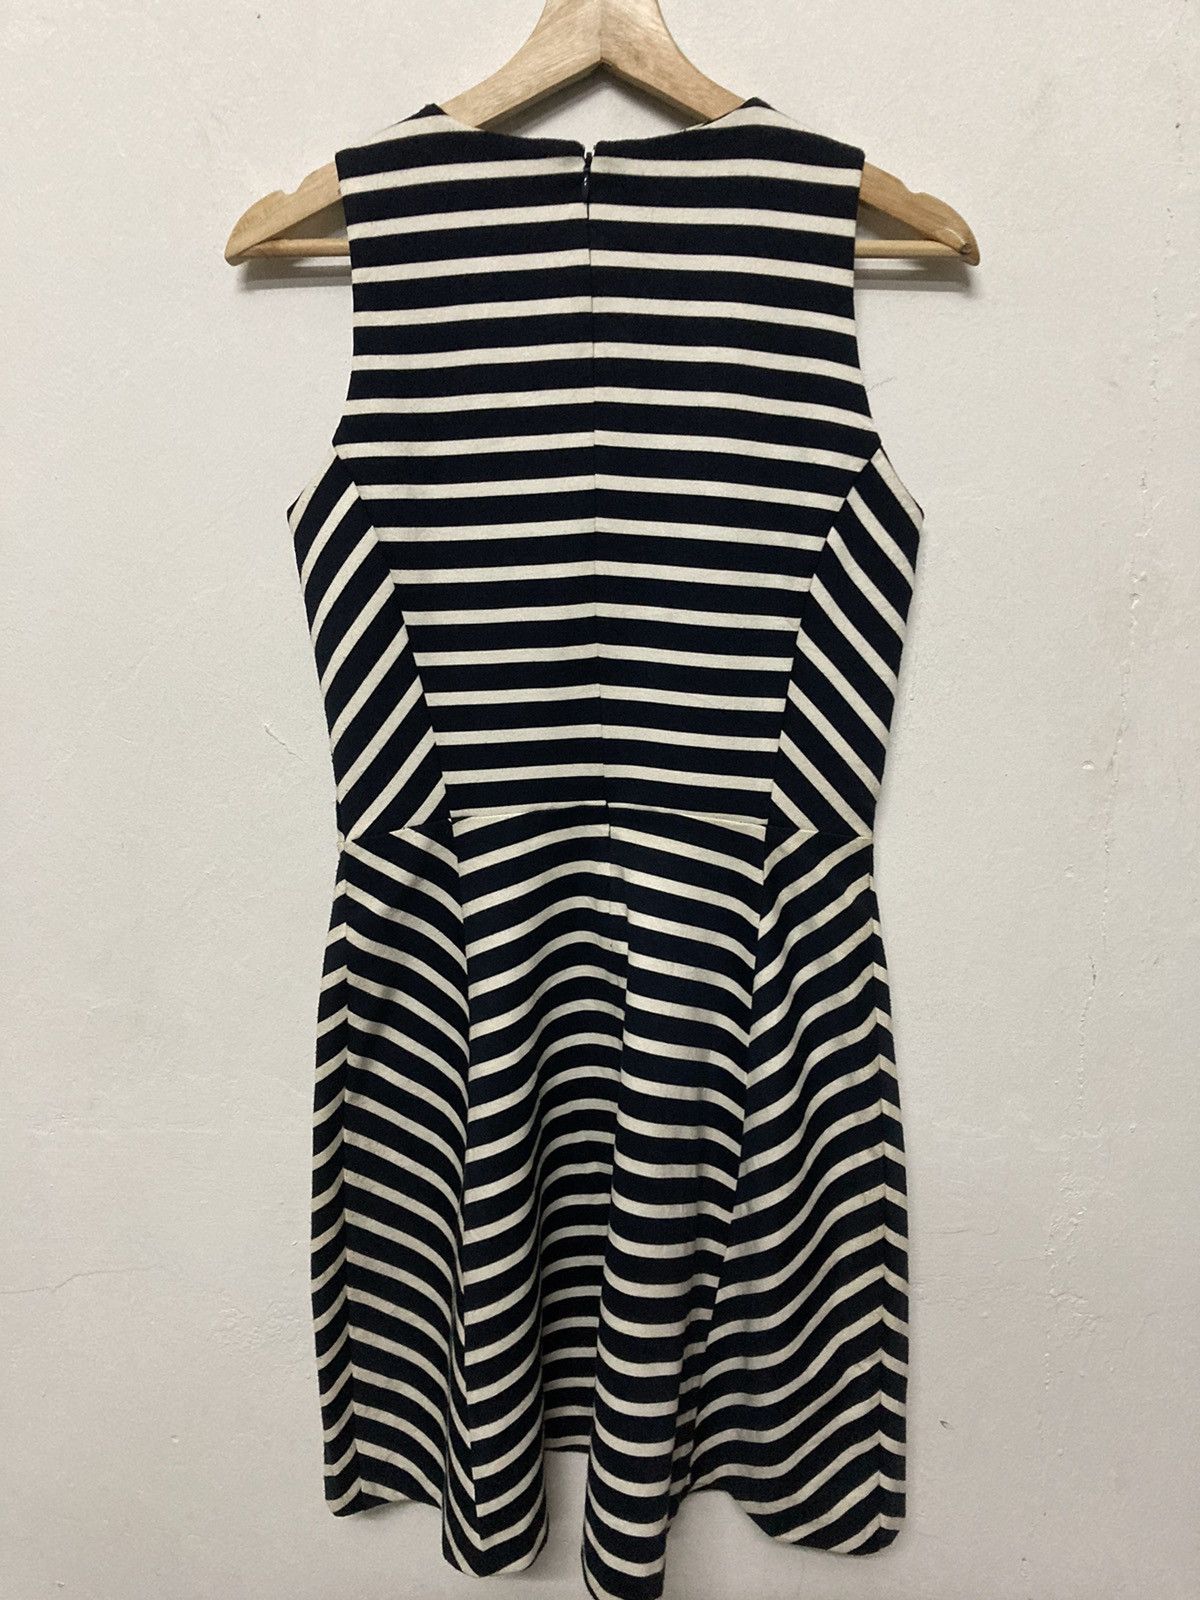 Michael Kors Sleeveless Striped Front Zip A Line Women Dress - 2